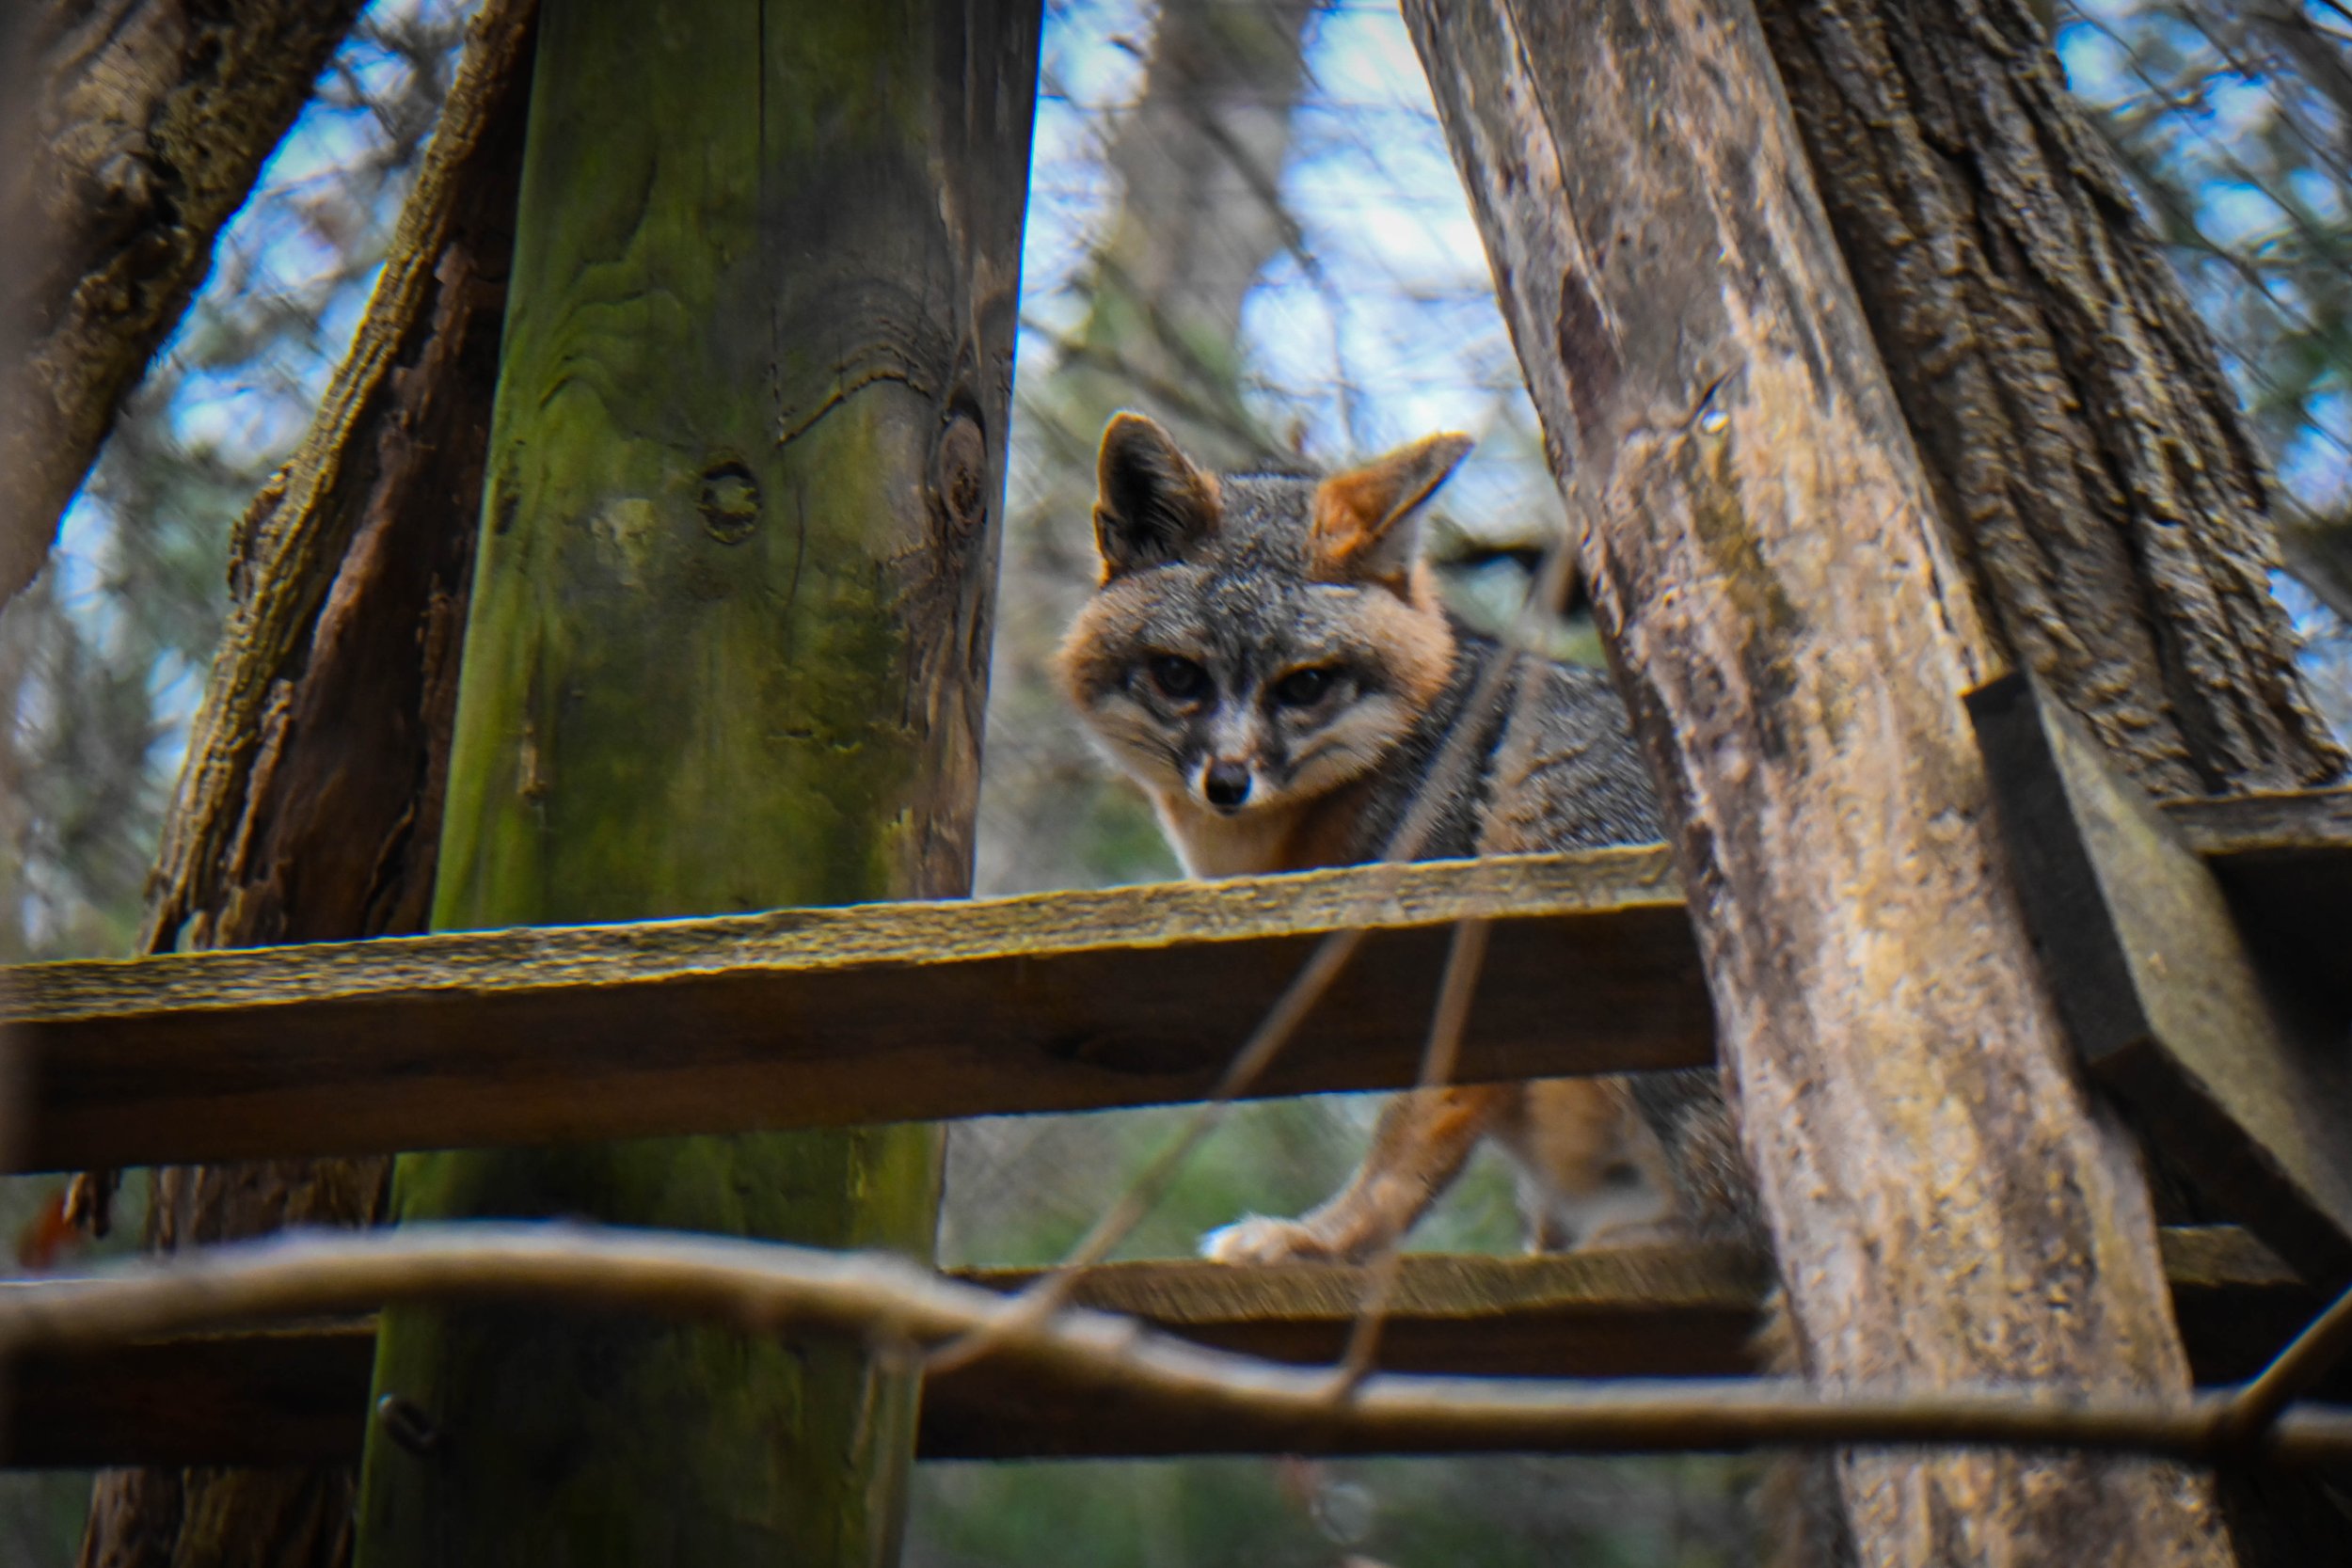  Gray Fox at Western North Carolina Nature Center. 